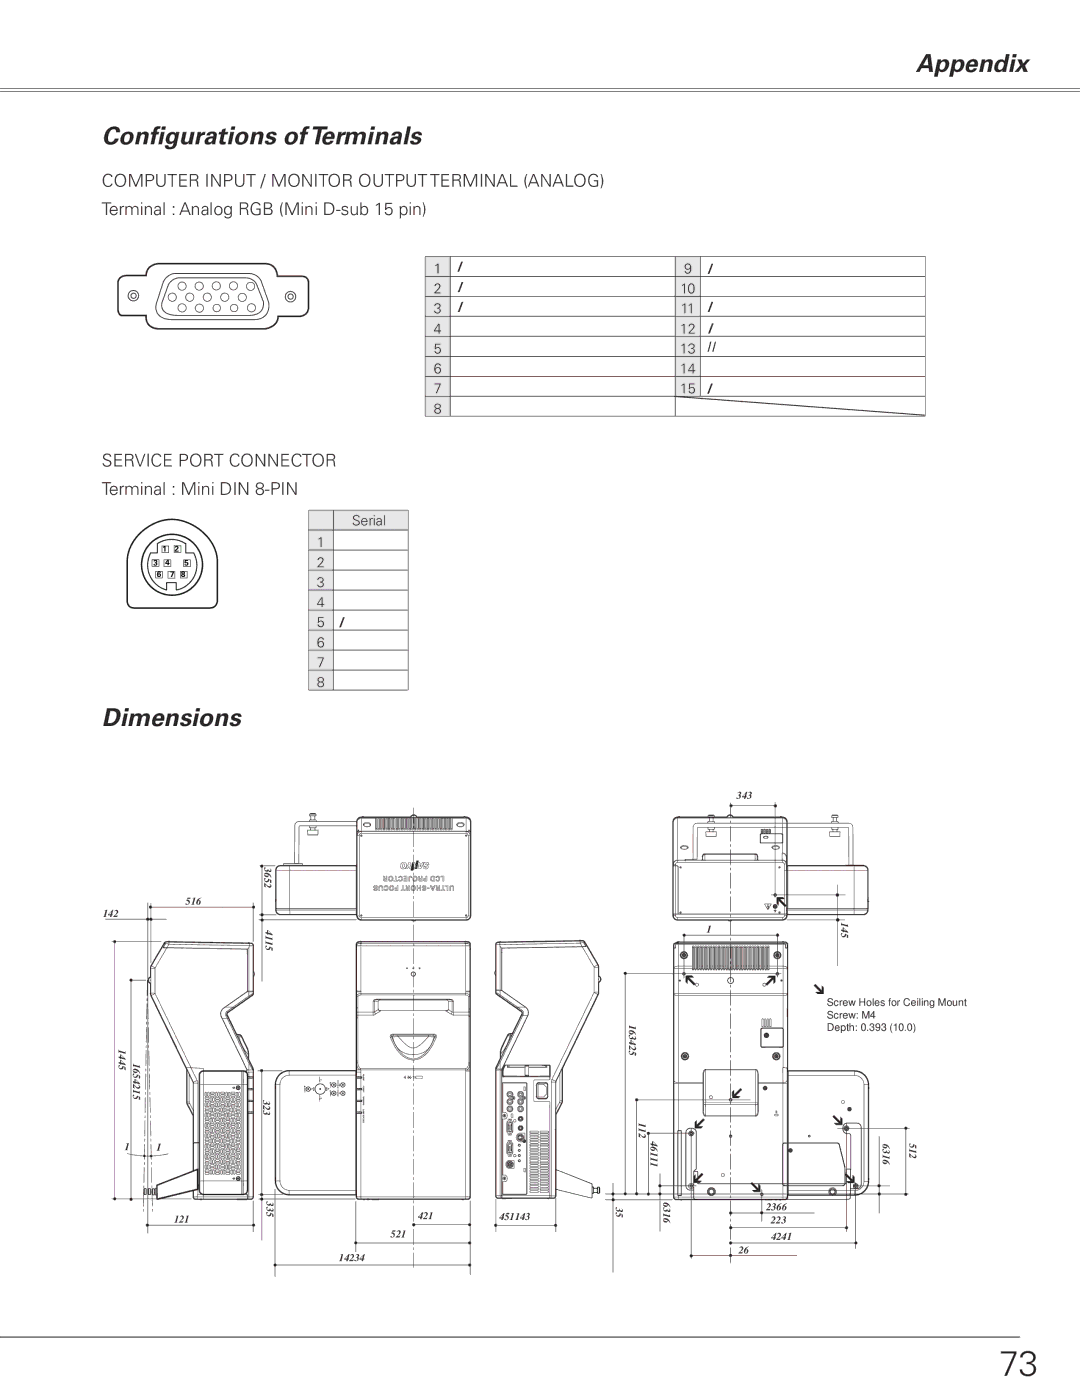 Sanyo PLC-XL50 owner manual Appendix Configurations of Terminals, Dimensions, Terminal Analog RGB Mini D-sub 15 pin 